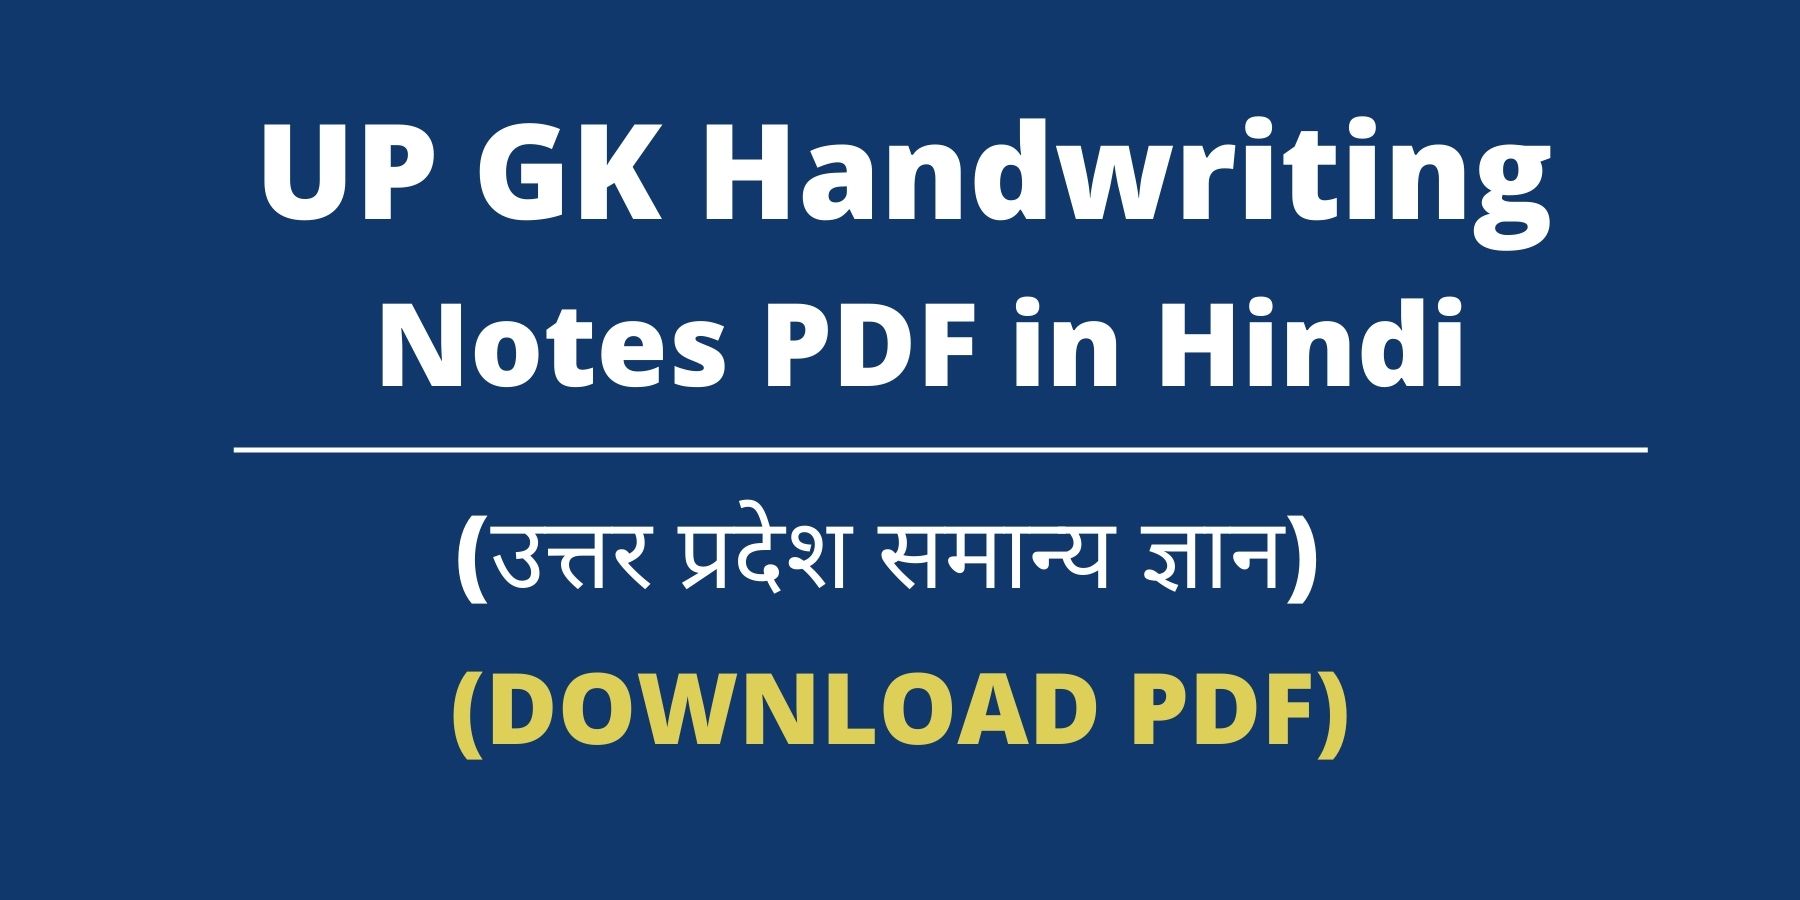 UP GK Handwriting Notes PDF in Hindi